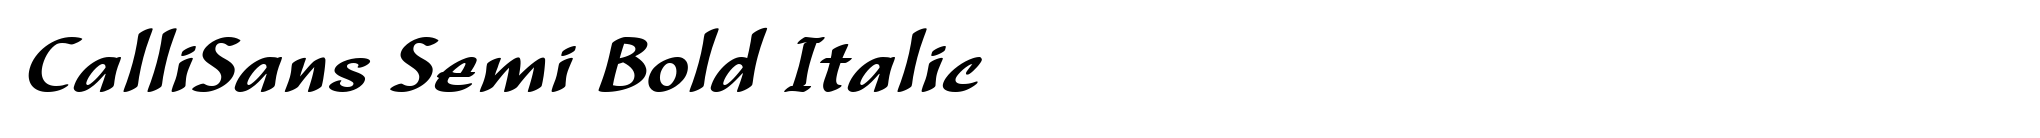 CalliSans Semi Bold Italic image